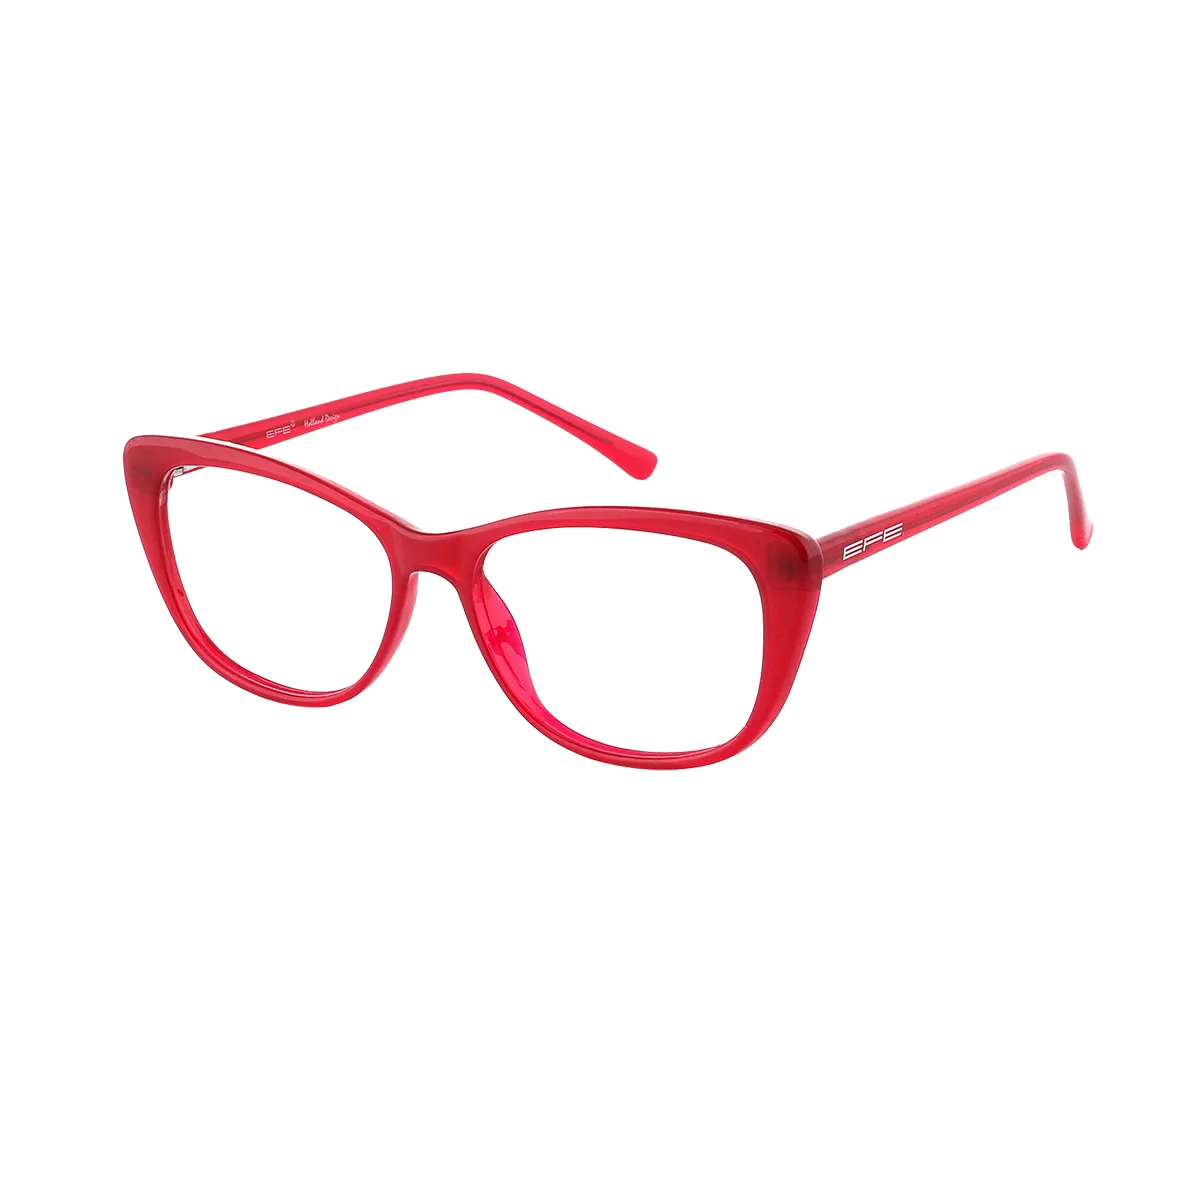 Haines - Cat-eye Red Glasses for Women - EFE